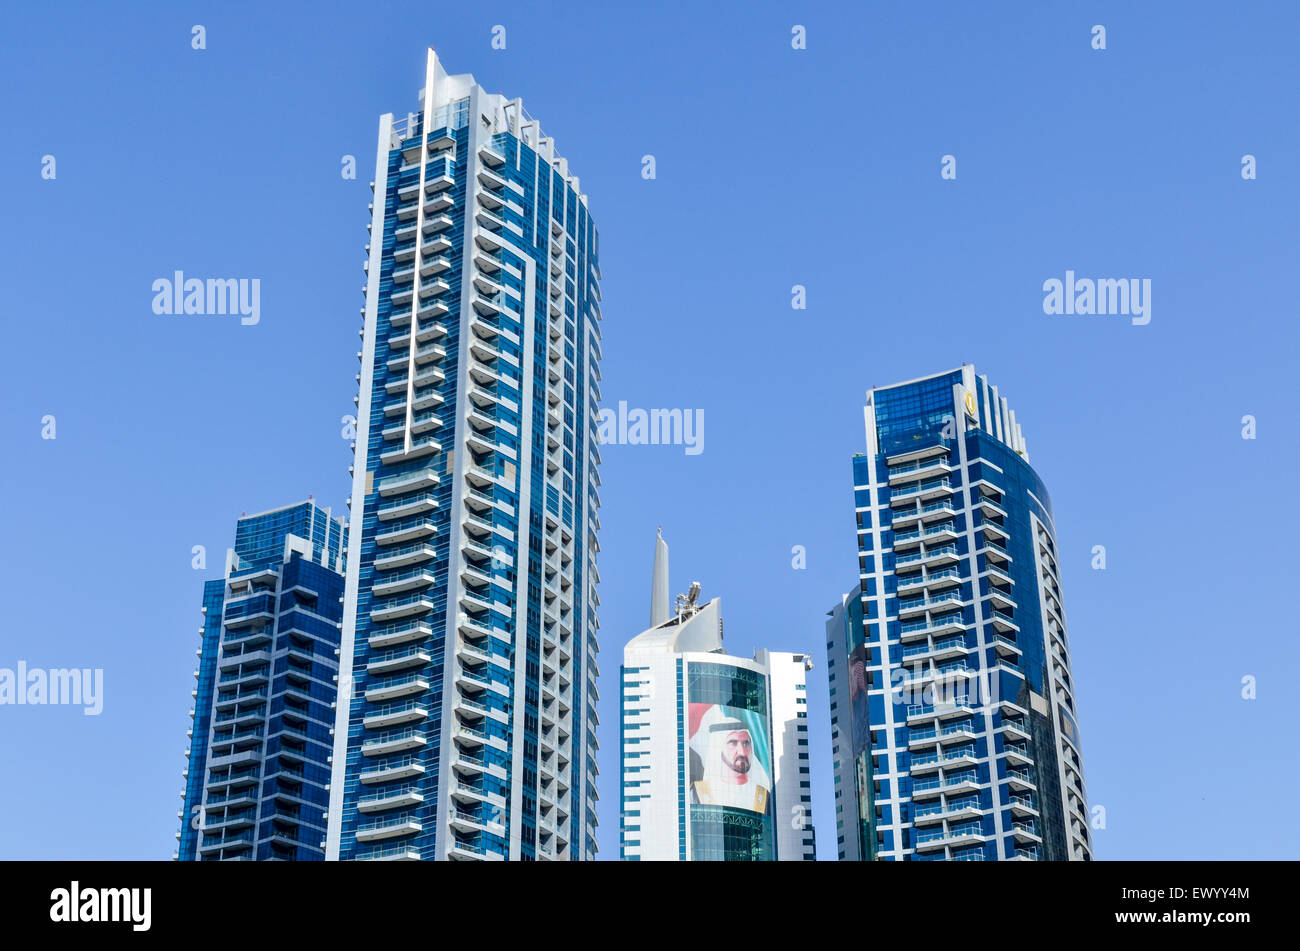 Face of the Emir of Dubai on the high rise buildings of the Dubai Marina, United Arab Emirates Stock Photo